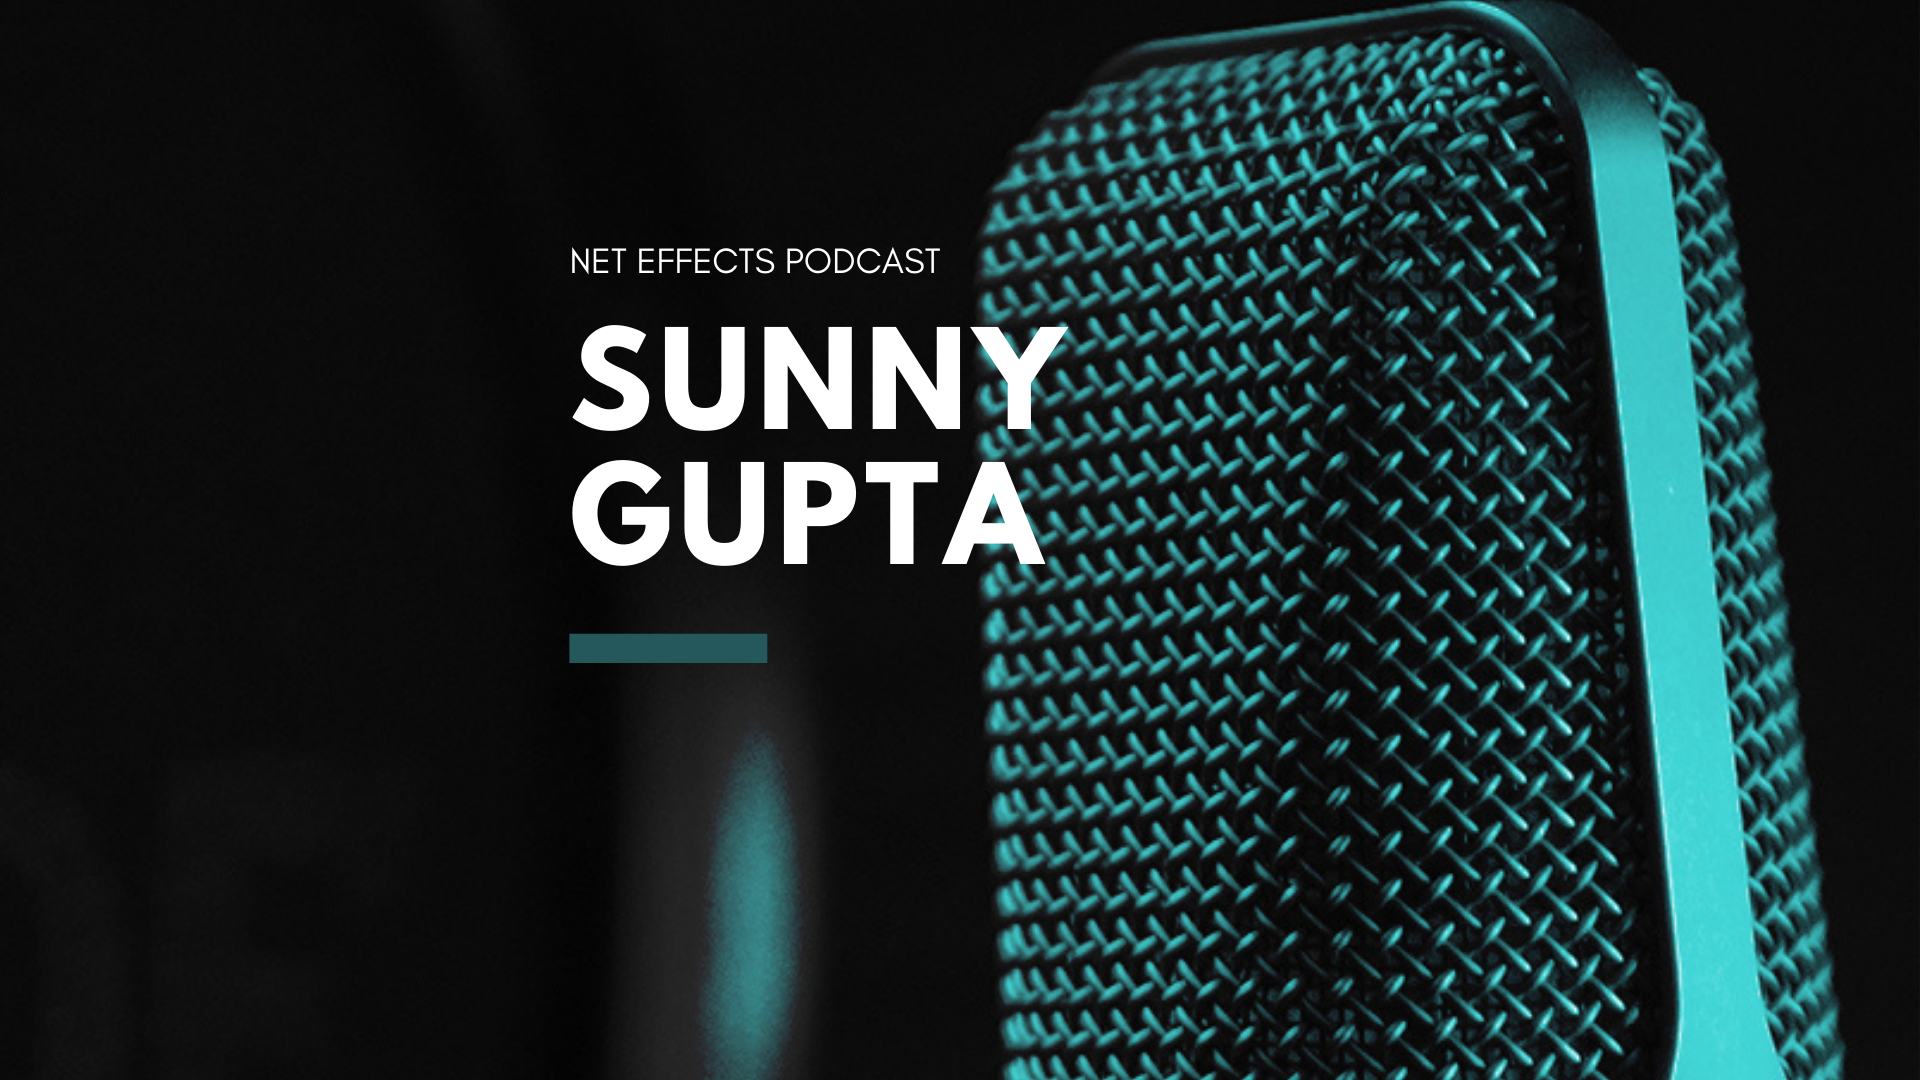 Episode 13: Featuring Sunny Gupta, CEO of Apptio